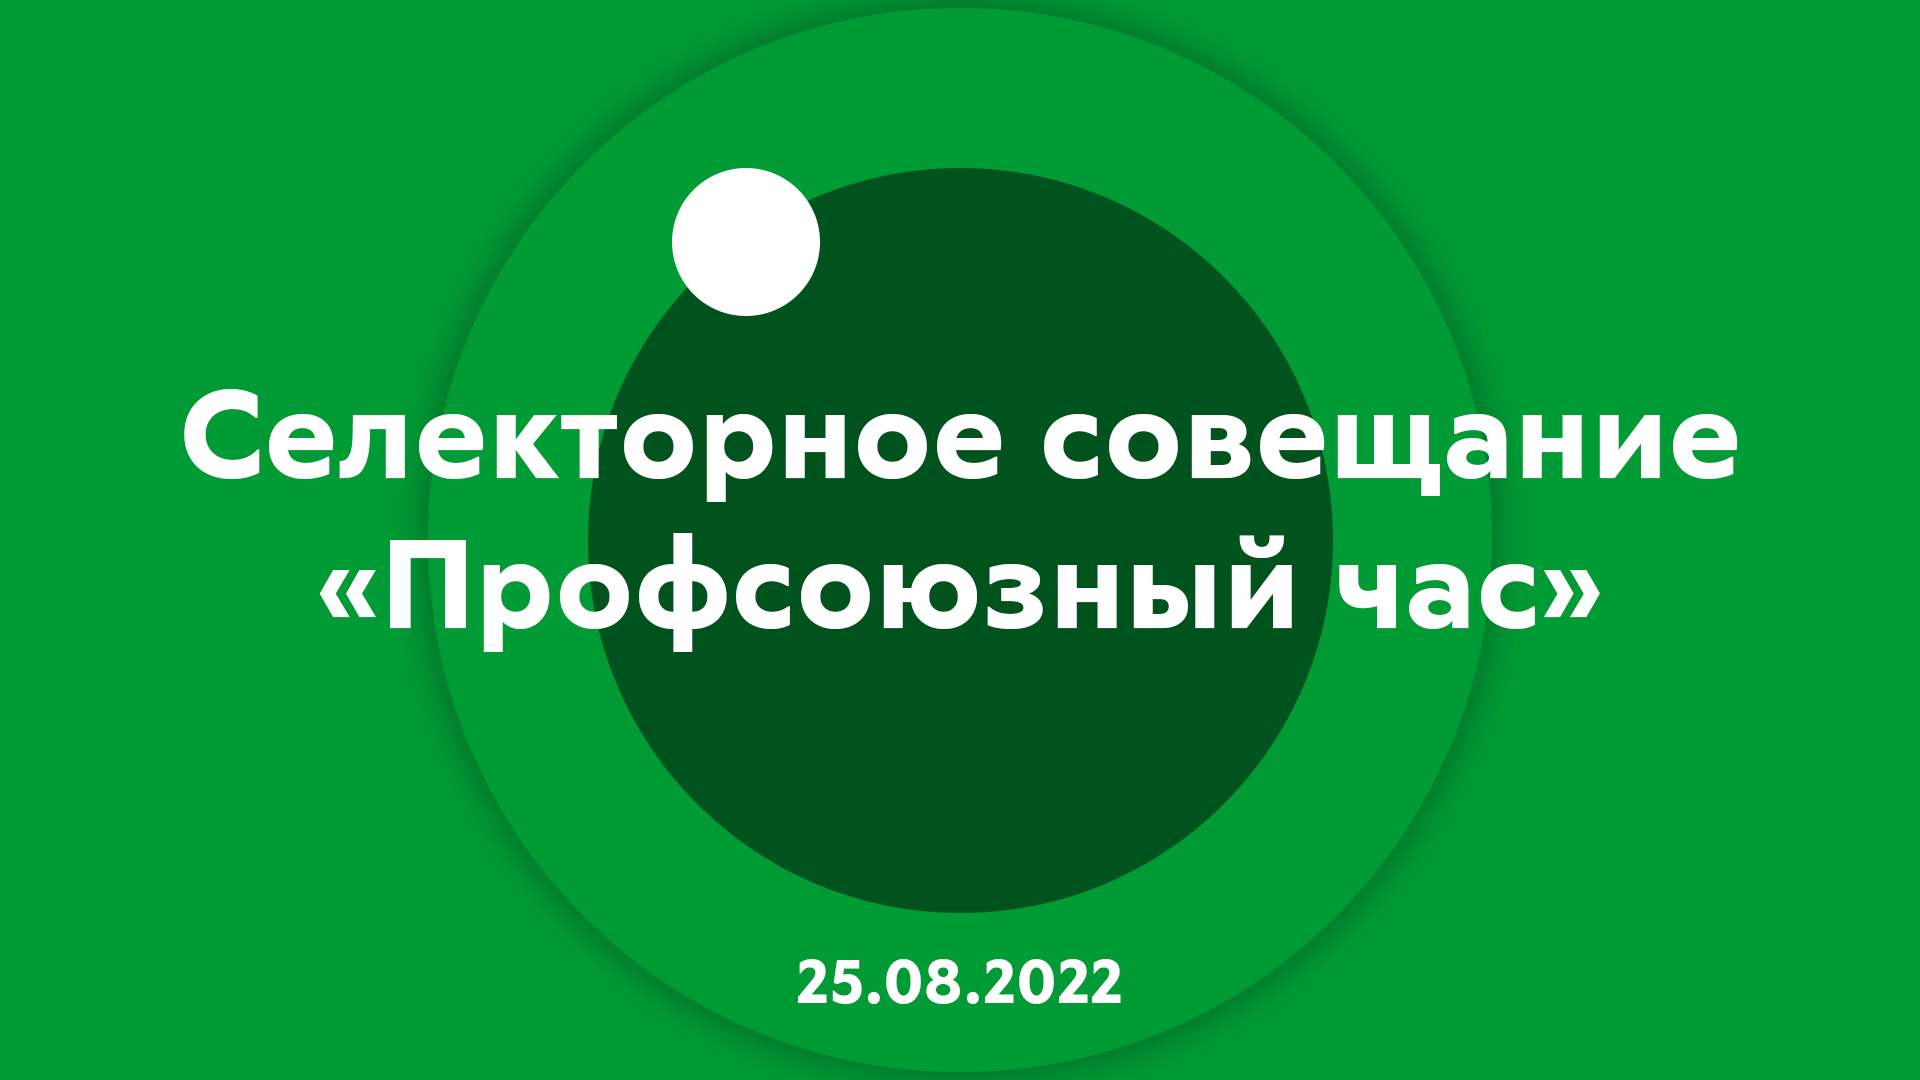 Селекторное совещание "Профсоюзный час" 25.08.2022